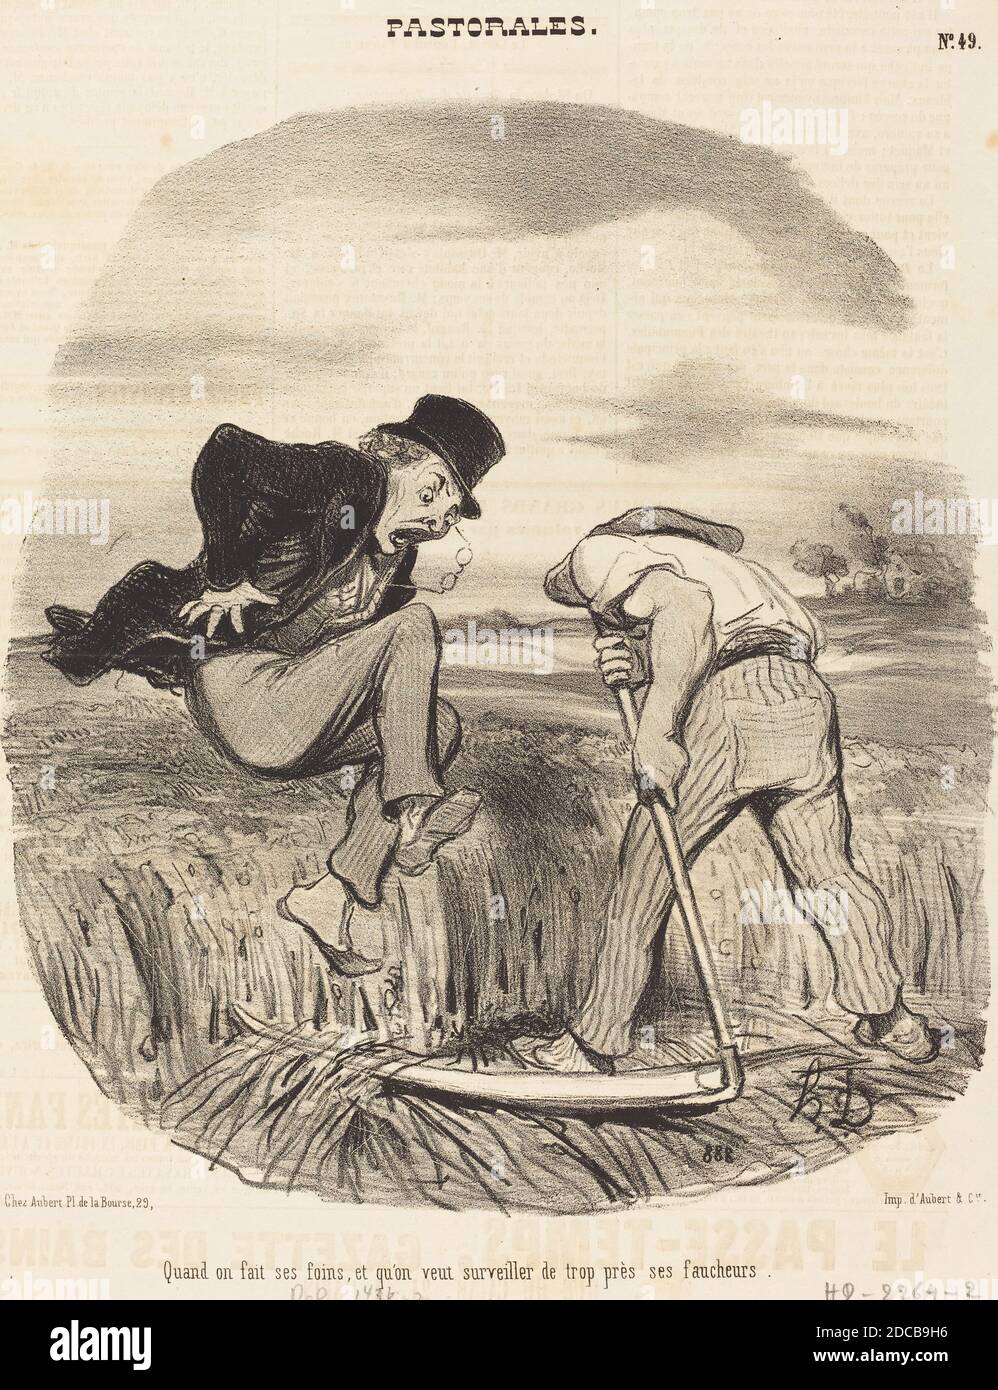 Honoré Daumier, (Künstler), französisch, 1808 - 1879, Quand on fait ses foins..., Pastorales: pl. 49, (Serie), 1846, Lithographie auf Zeitungspapier Stockfoto